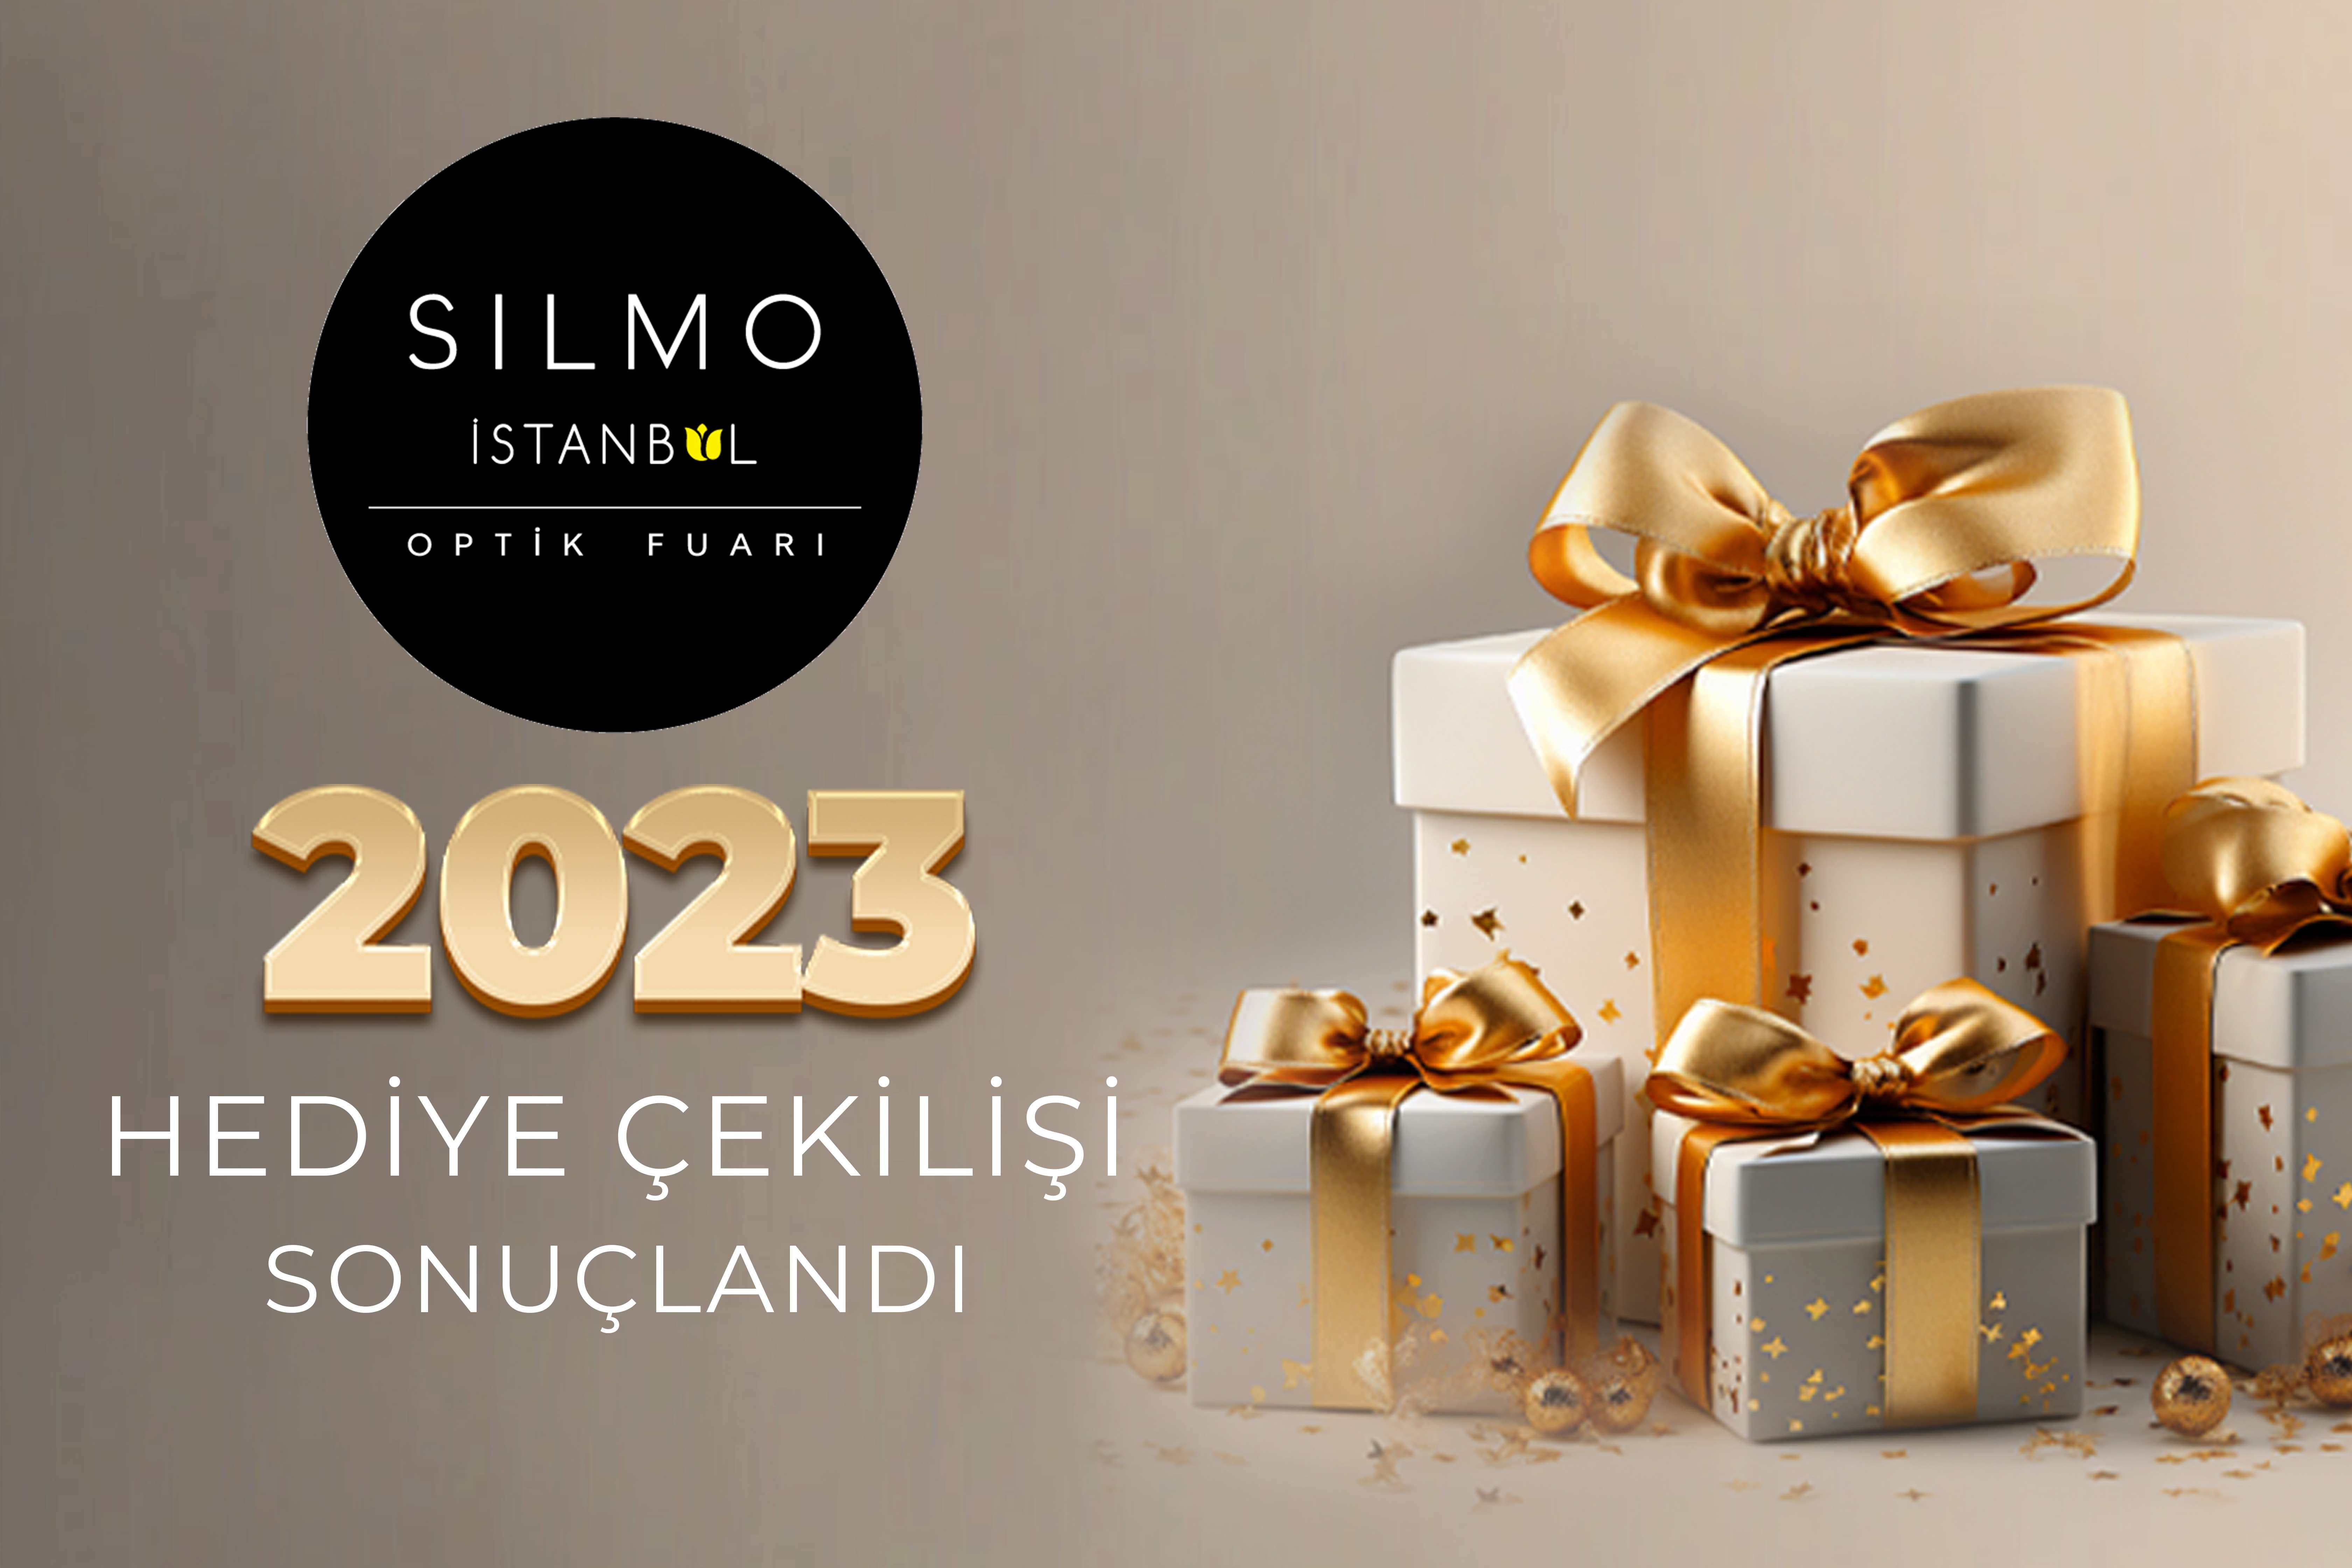 SILMO İSTANBUL 2023 HEDİYE ÇEKİLİŞİ SONUÇLANDI